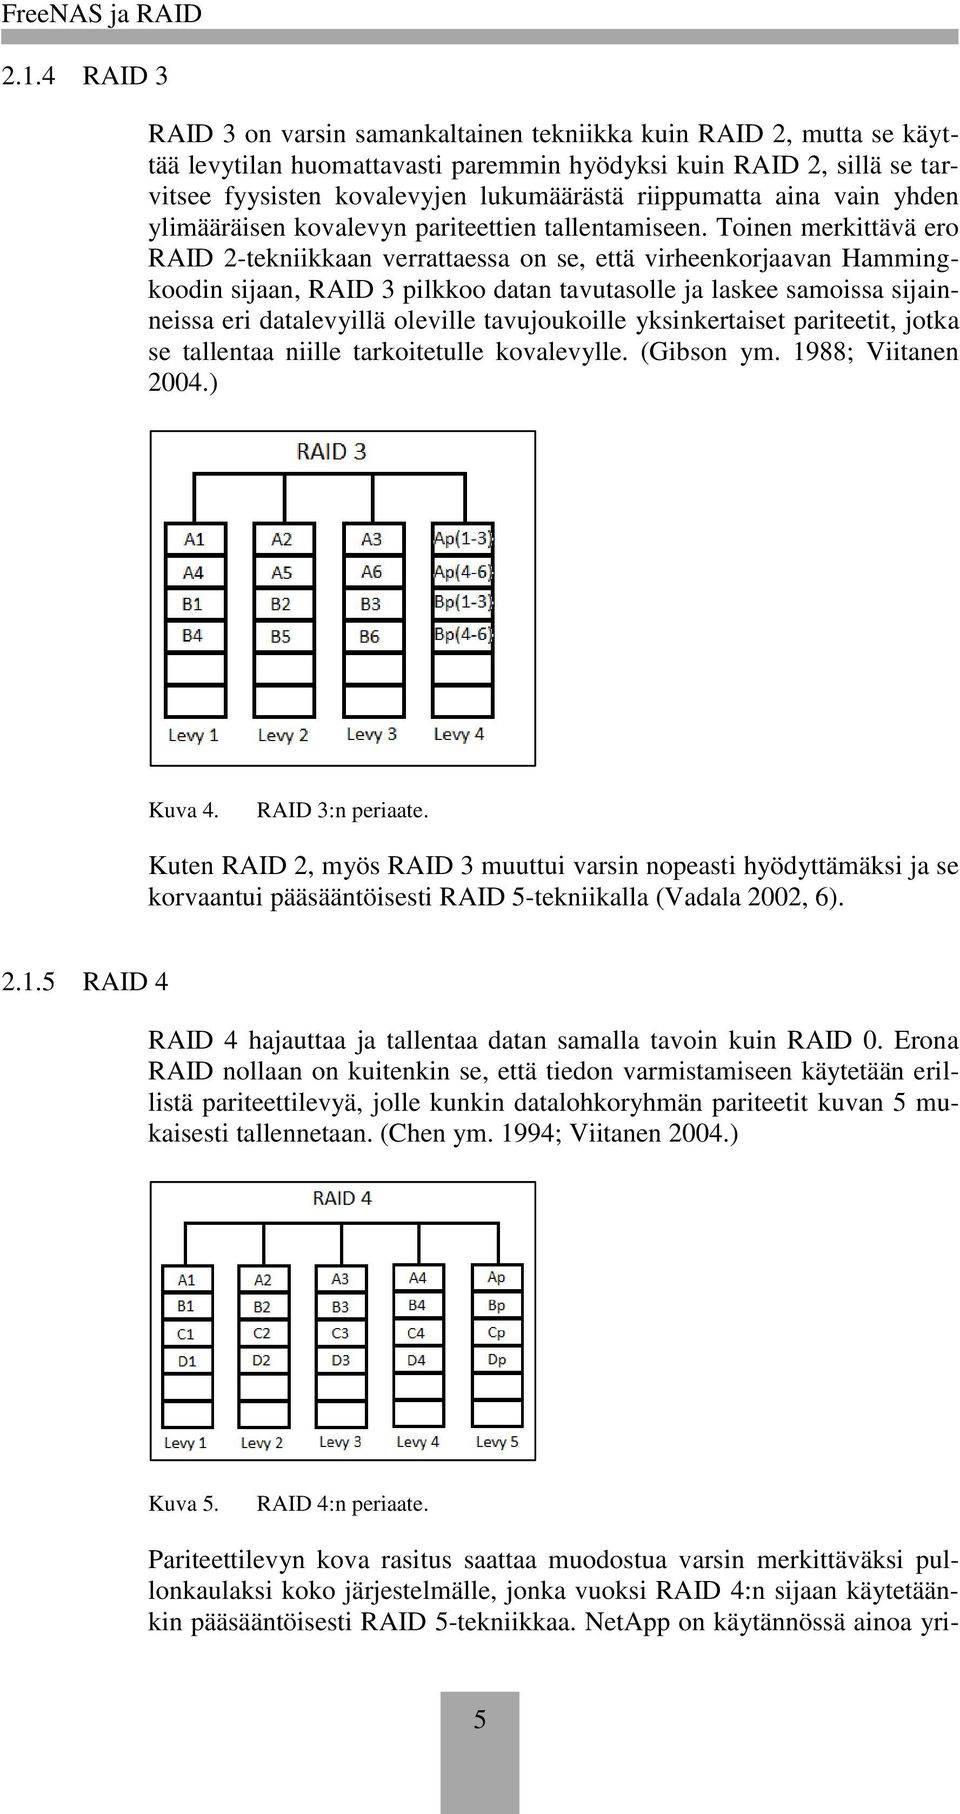 Toinen merkittävä ero RAID 2-tekniikkaan verrattaessa on se, että virheenkorjaavan Hammingkoodin sijaan, RAID 3 pilkkoo datan tavutasolle ja laskee samoissa sijainneissa eri datalevyillä oleville